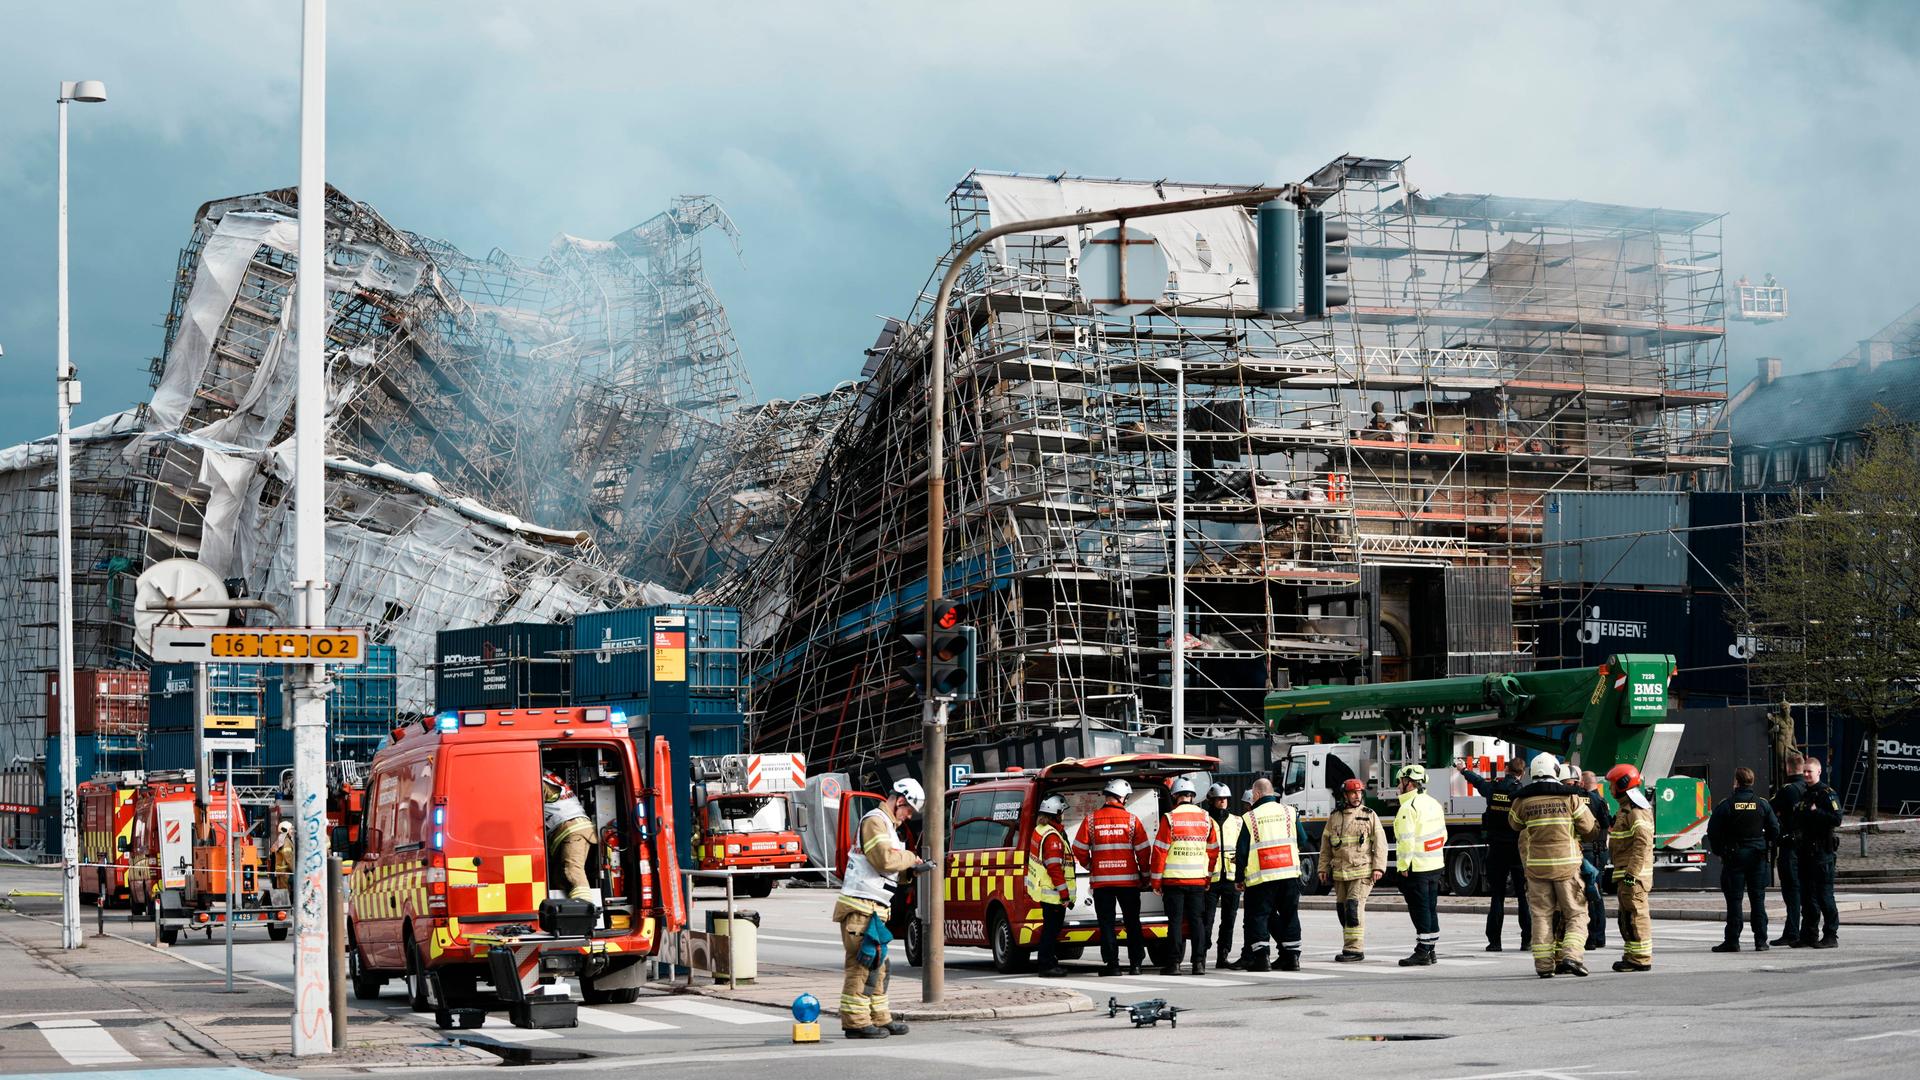 Dänemark - Fassade der historischen Börse in Kopenhagen zwei Tage nach Brand eingestürzt